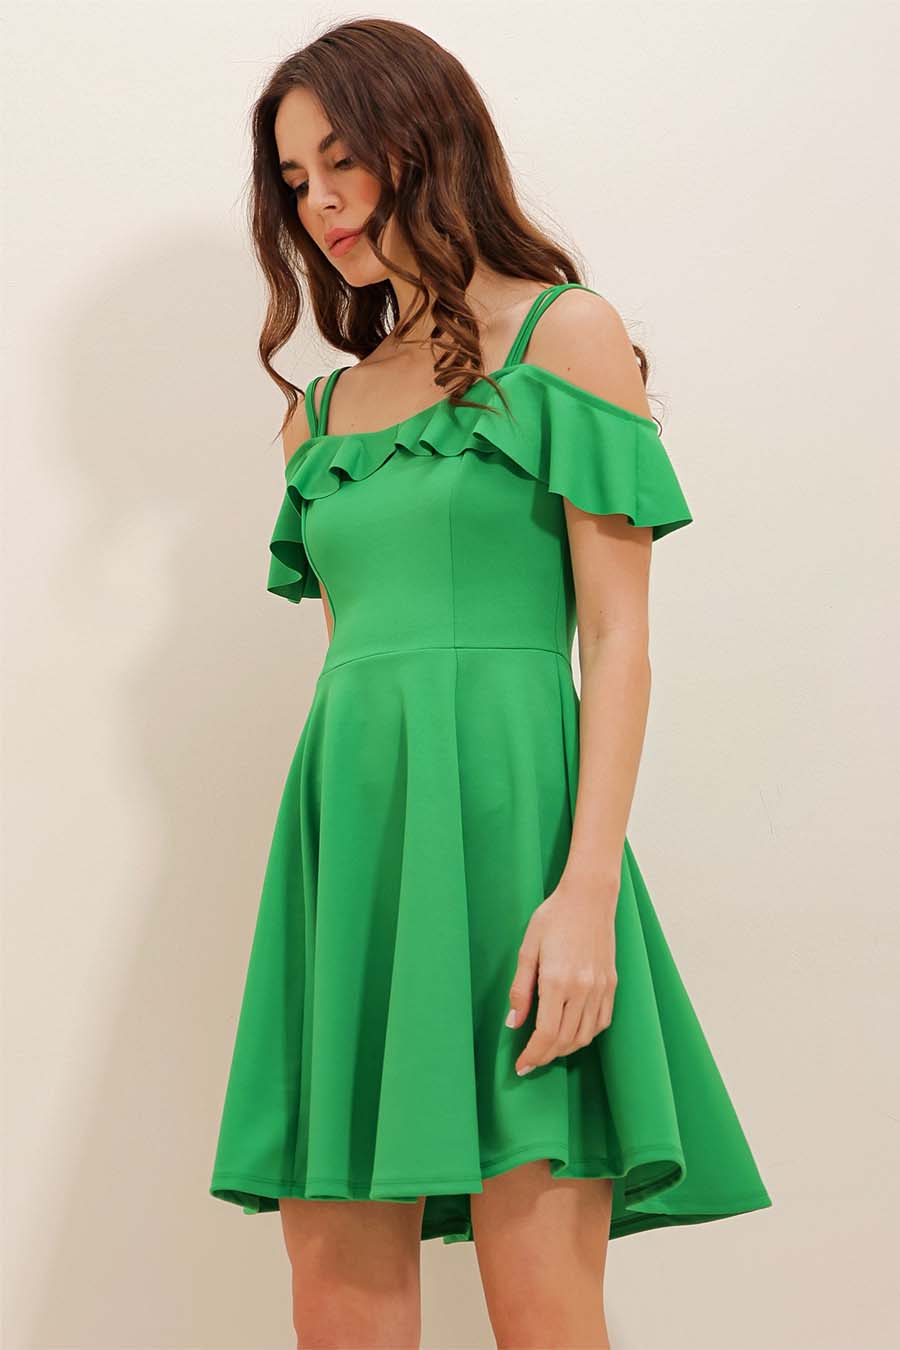 Γυναικείο φόρεμα Kaiea, Πράσινο 4